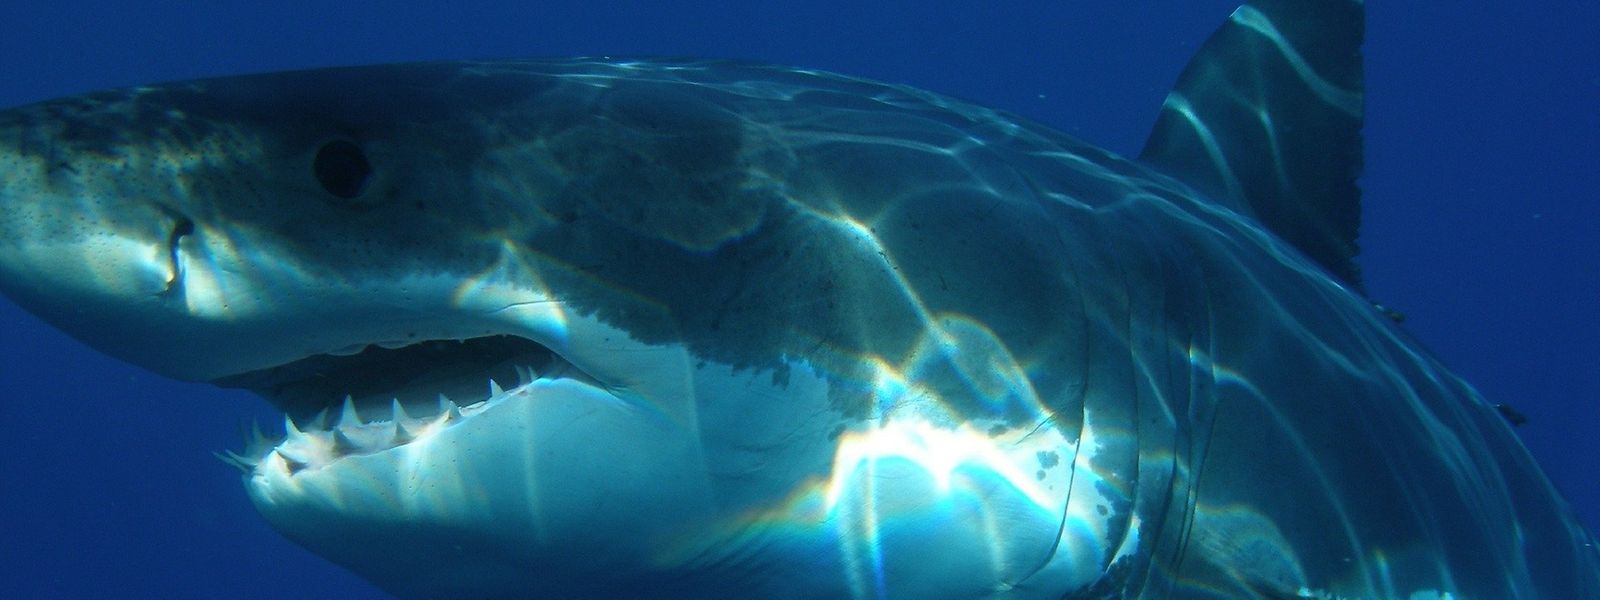 Der Vorfall war die dritte tödliche Hai-Attacke in Australien in diesem Jahr.